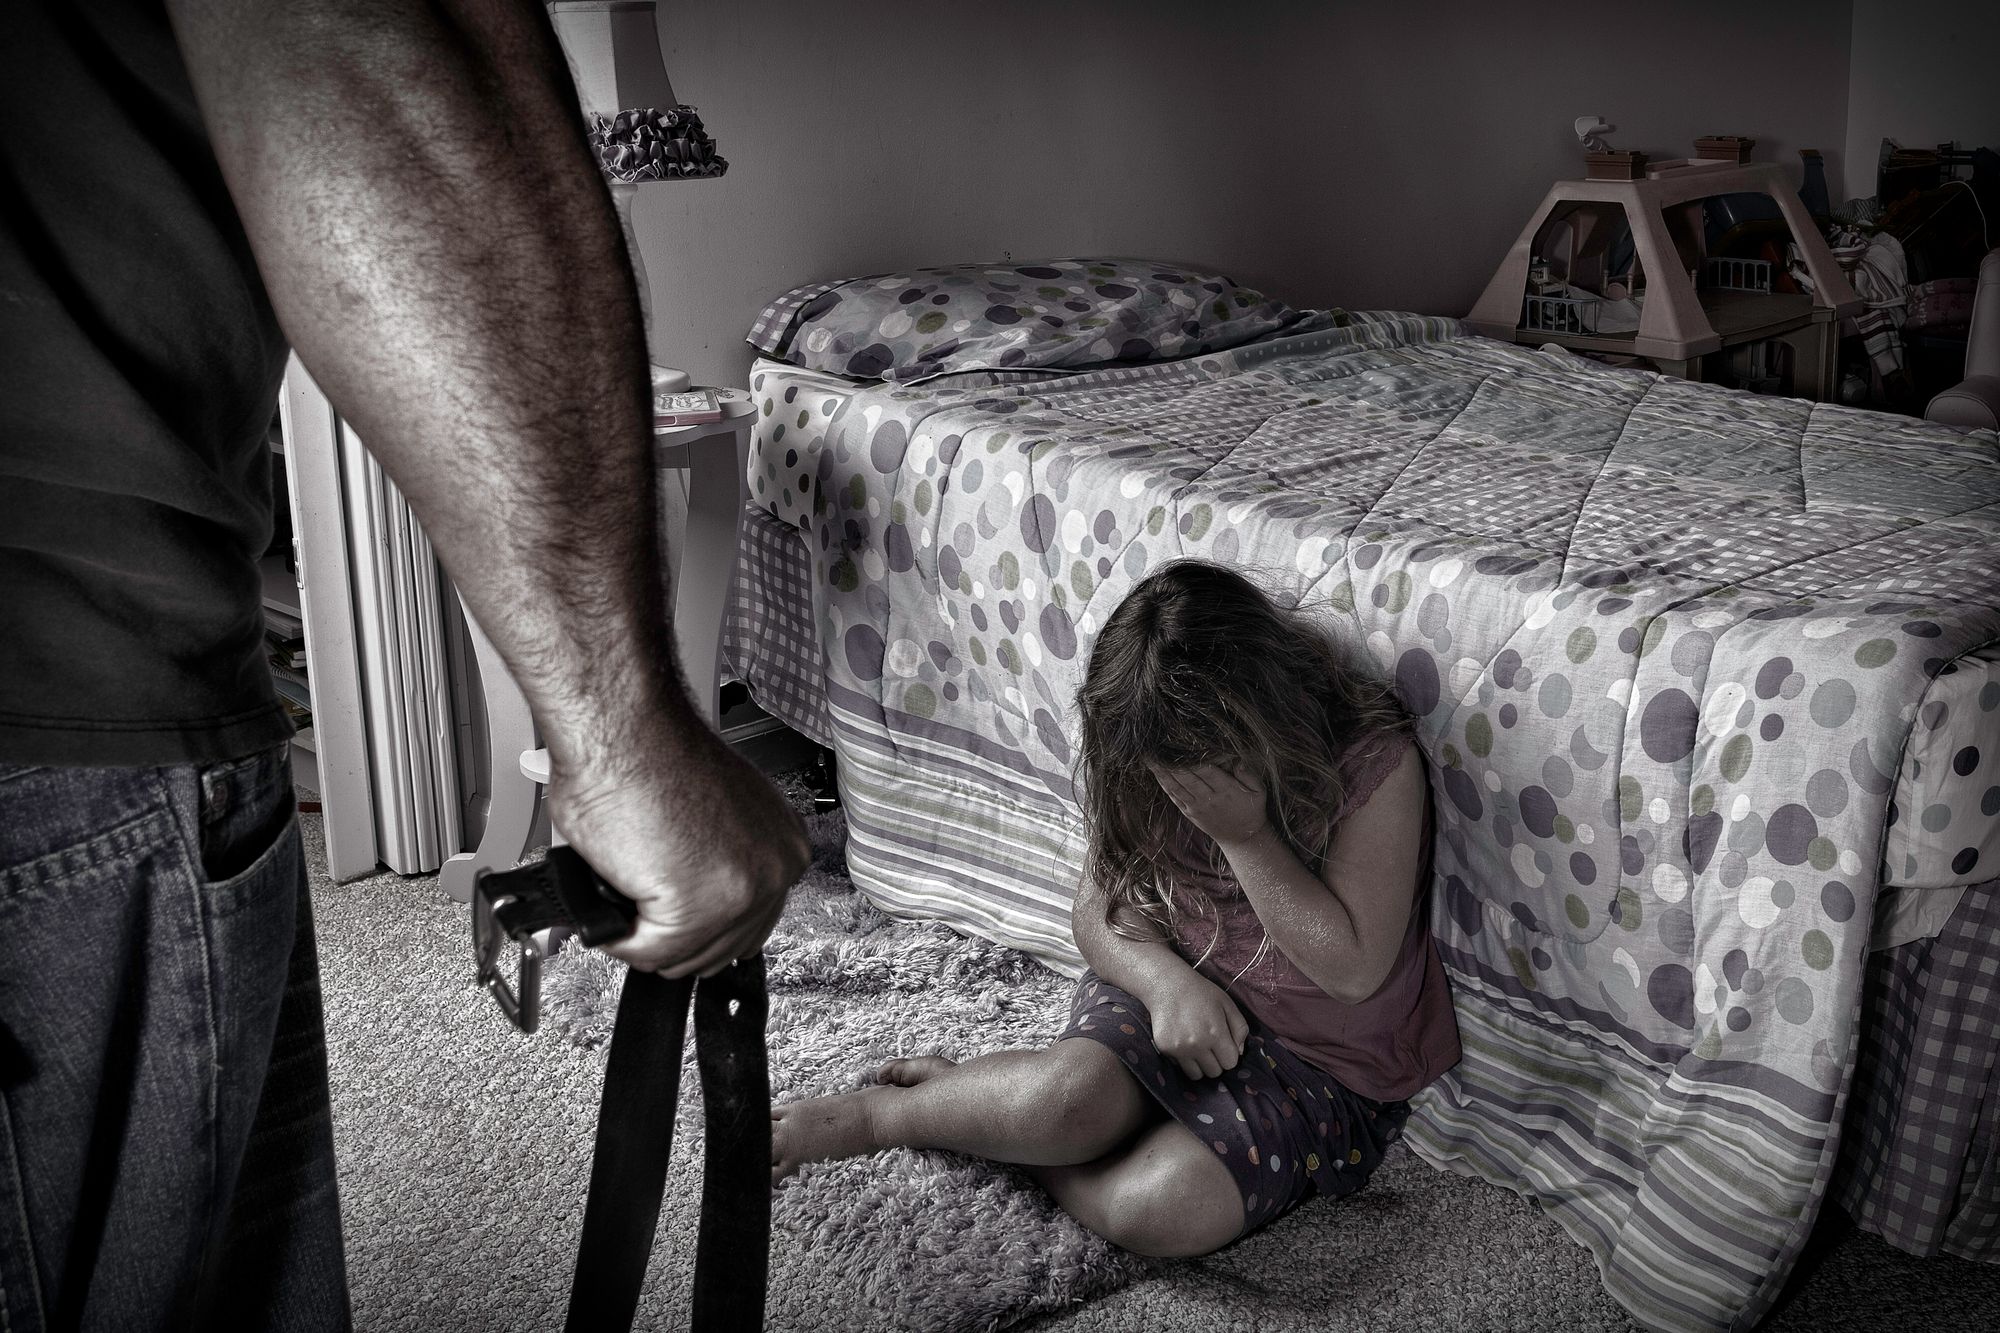 Schlimmster Fall von Kindesmissbrauch: Alptraum-Mutter muss für 700 Jahre in Knast